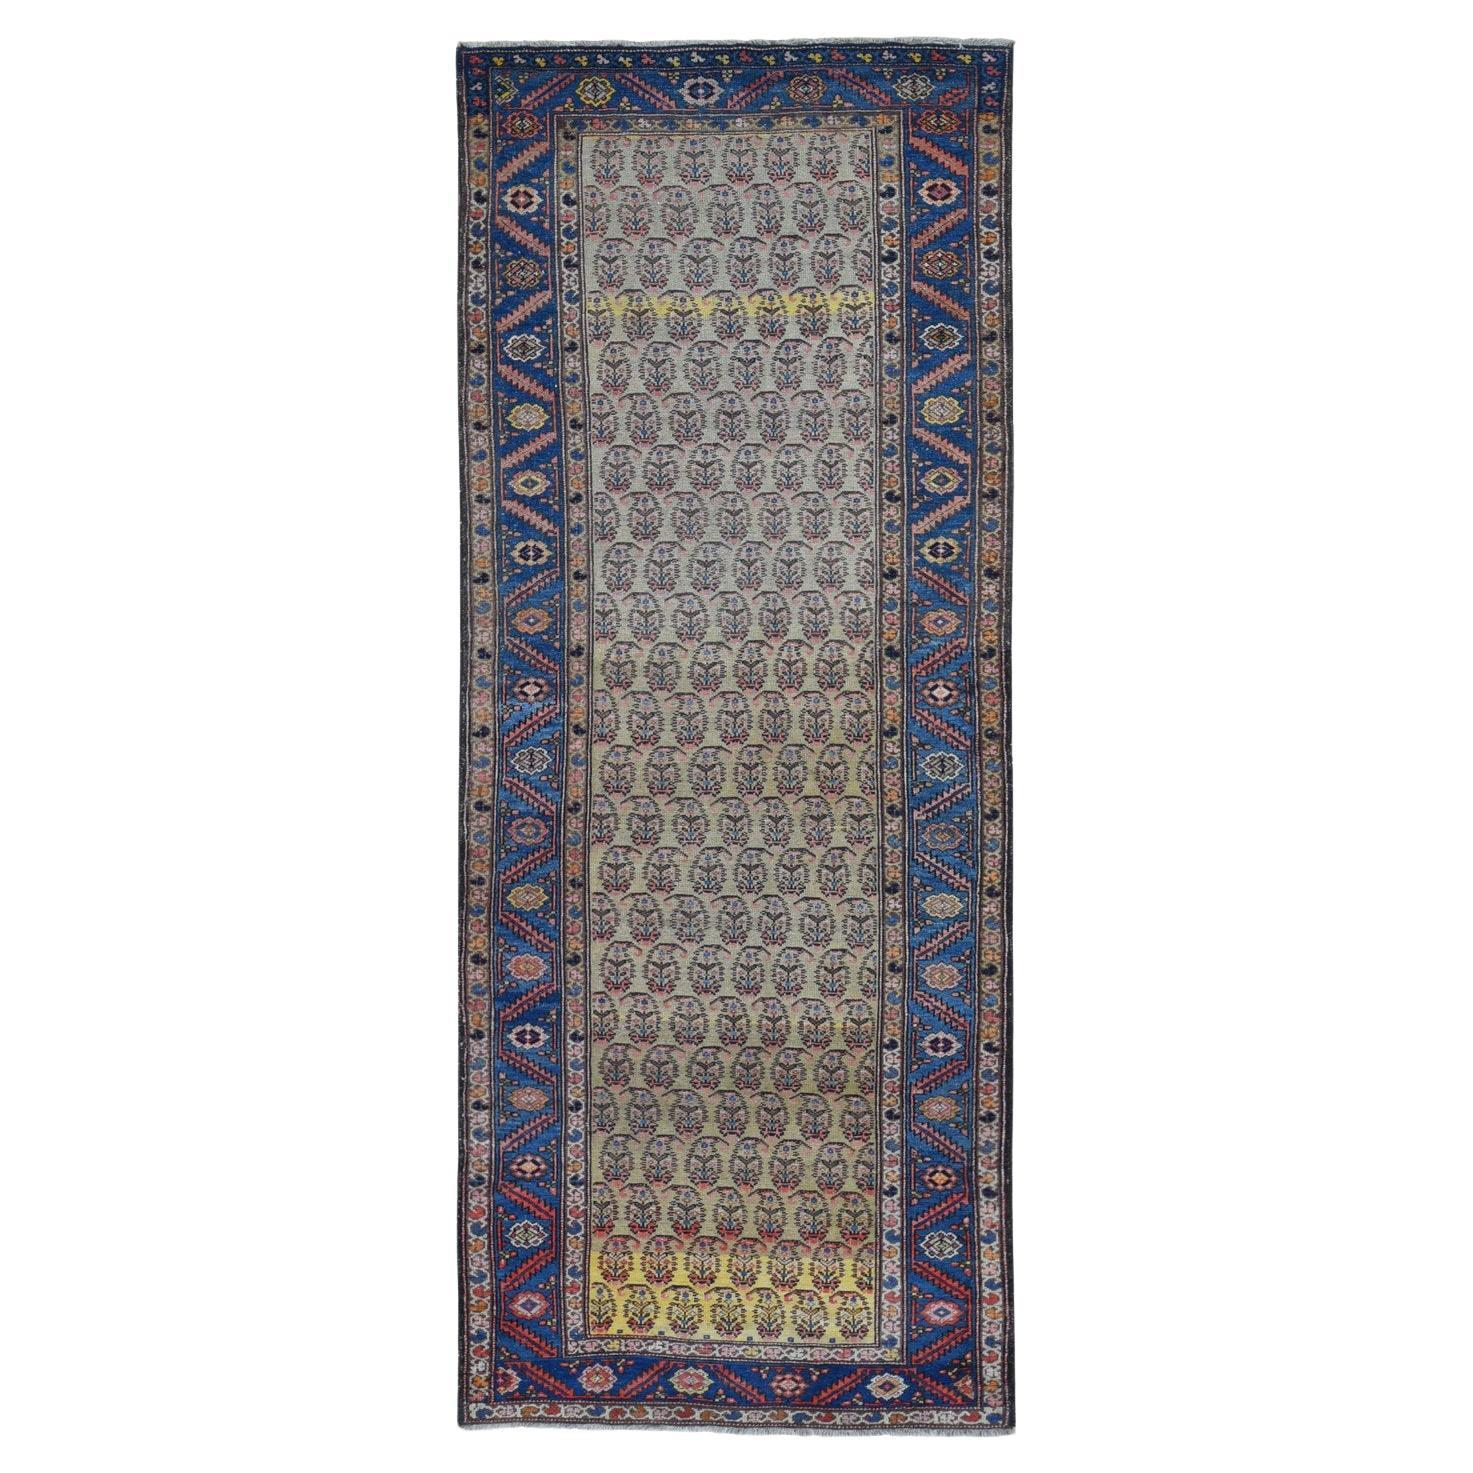 Gelber antiker persischer Bakshaish-Abrash-Teppich aus Wolle mit Paisleymuster, handgeknüpft